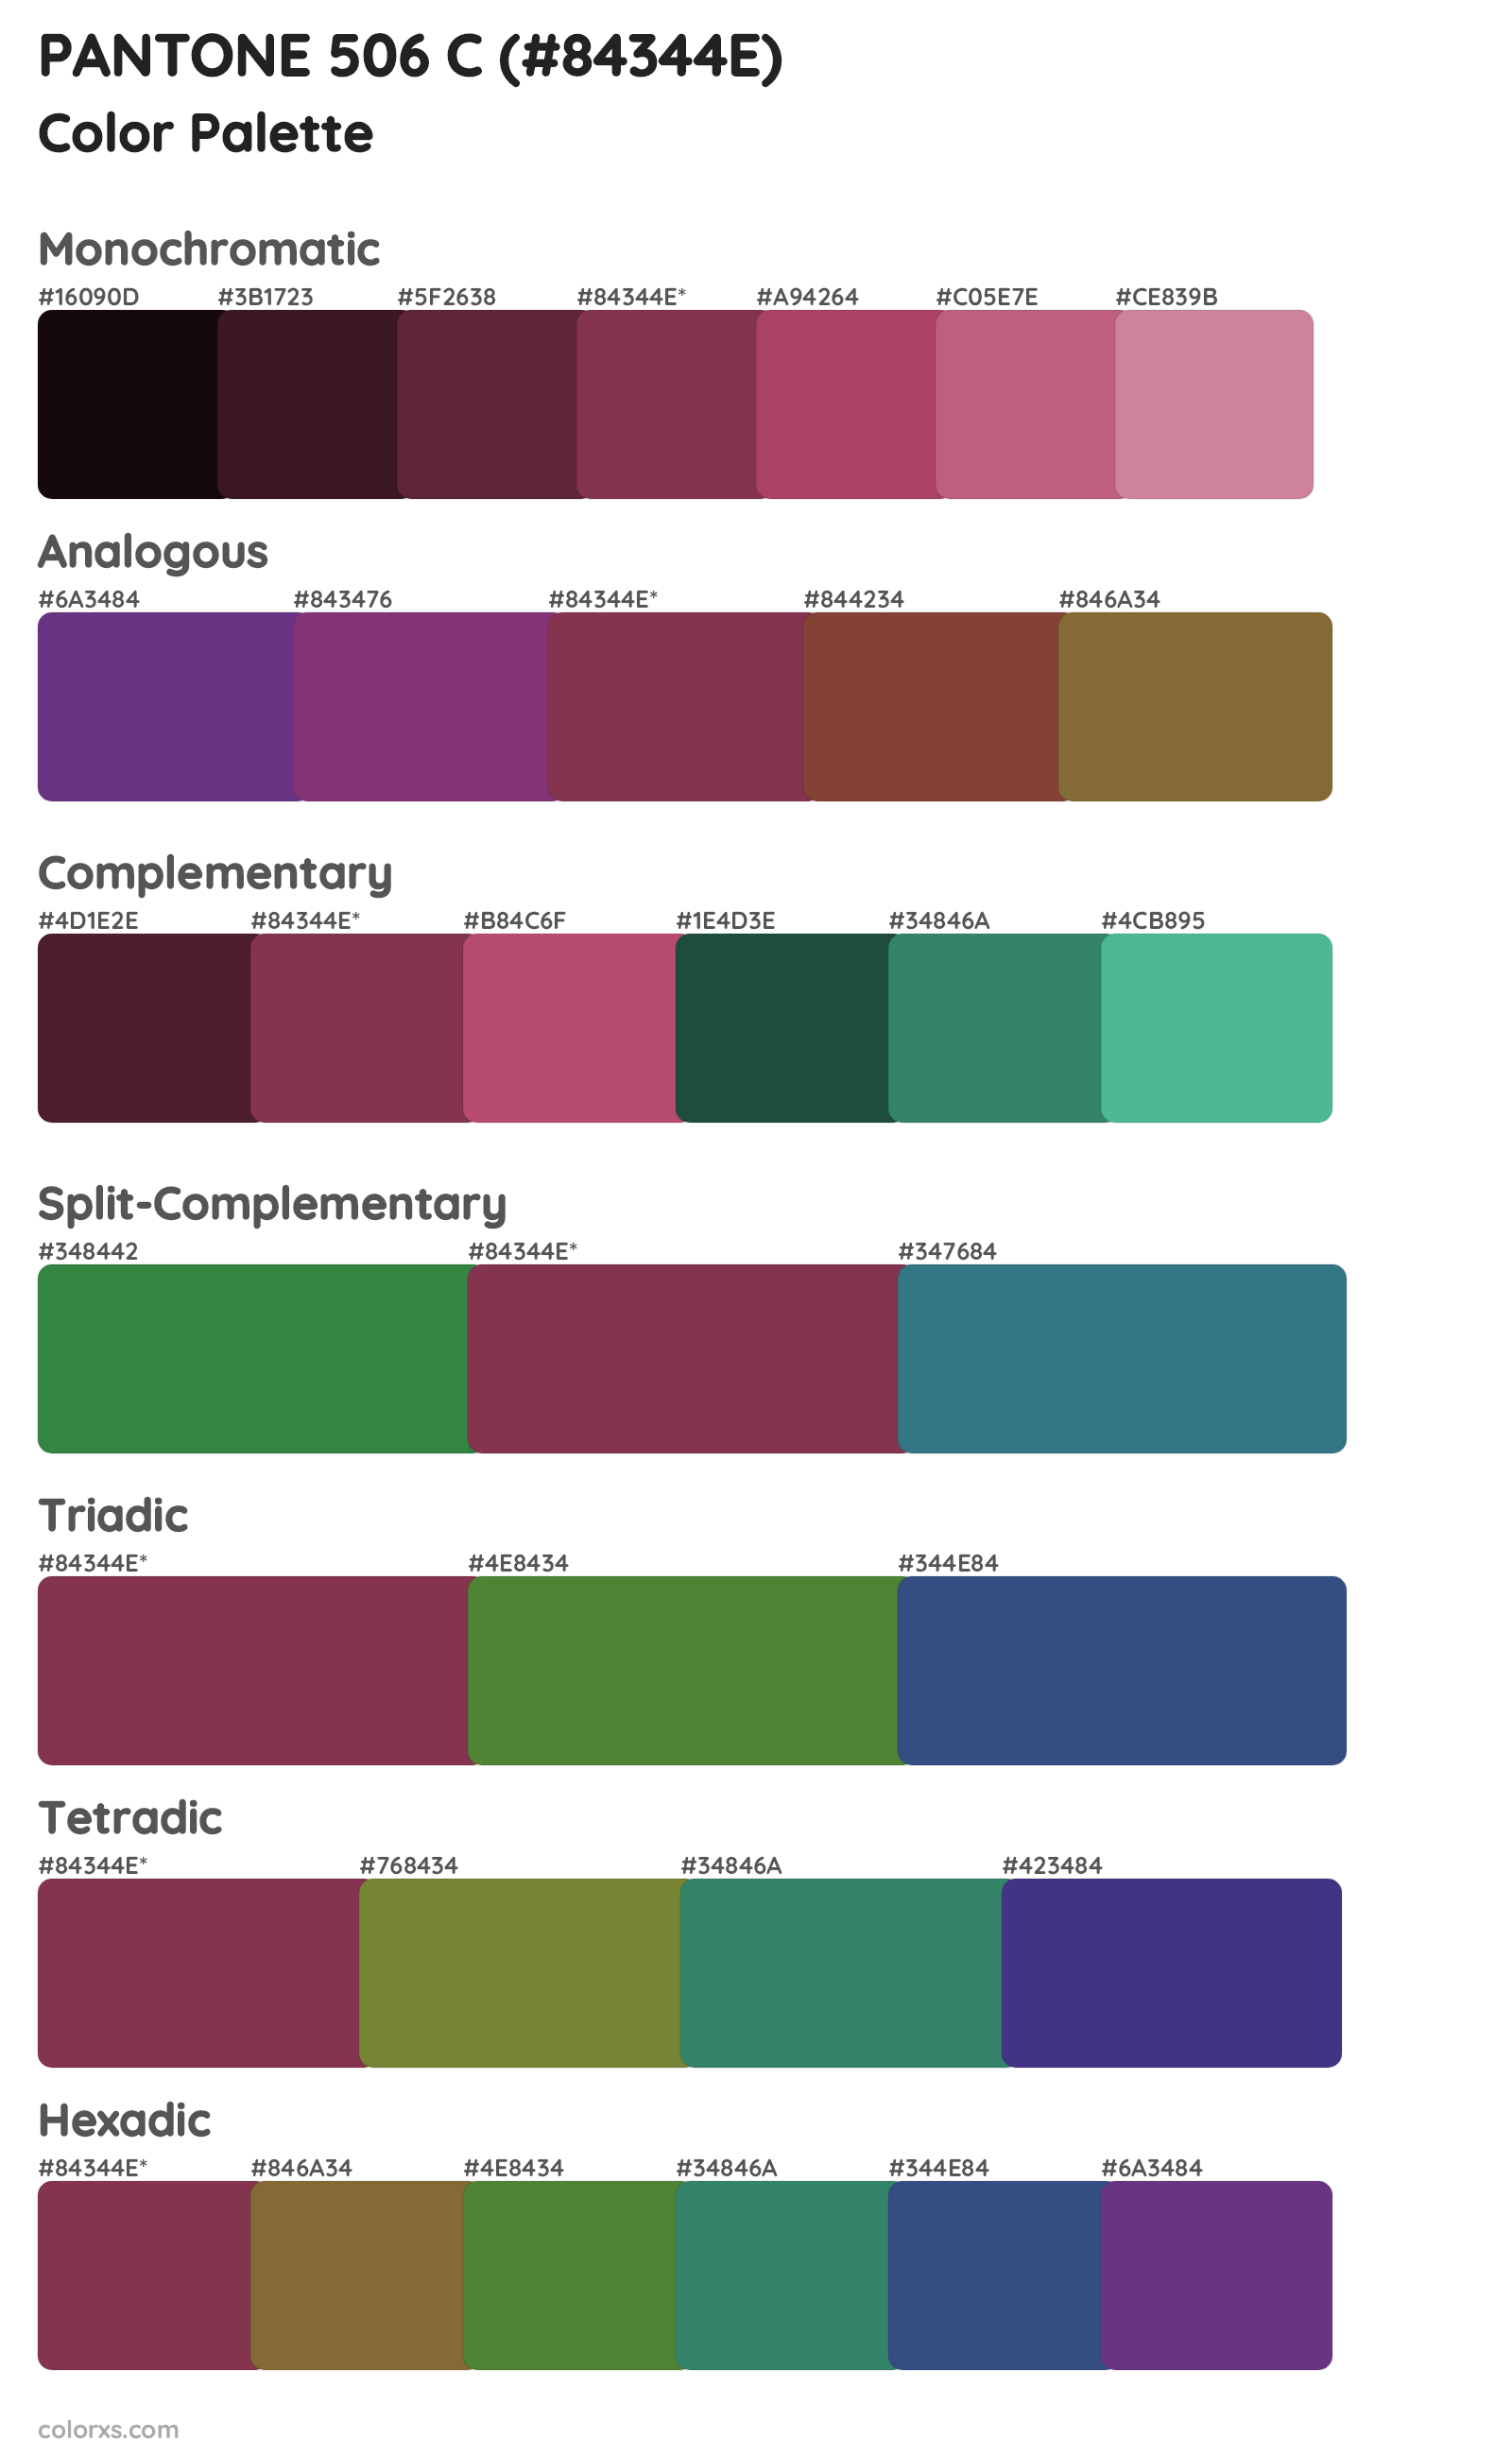 PANTONE 506 C Color Scheme Palettes